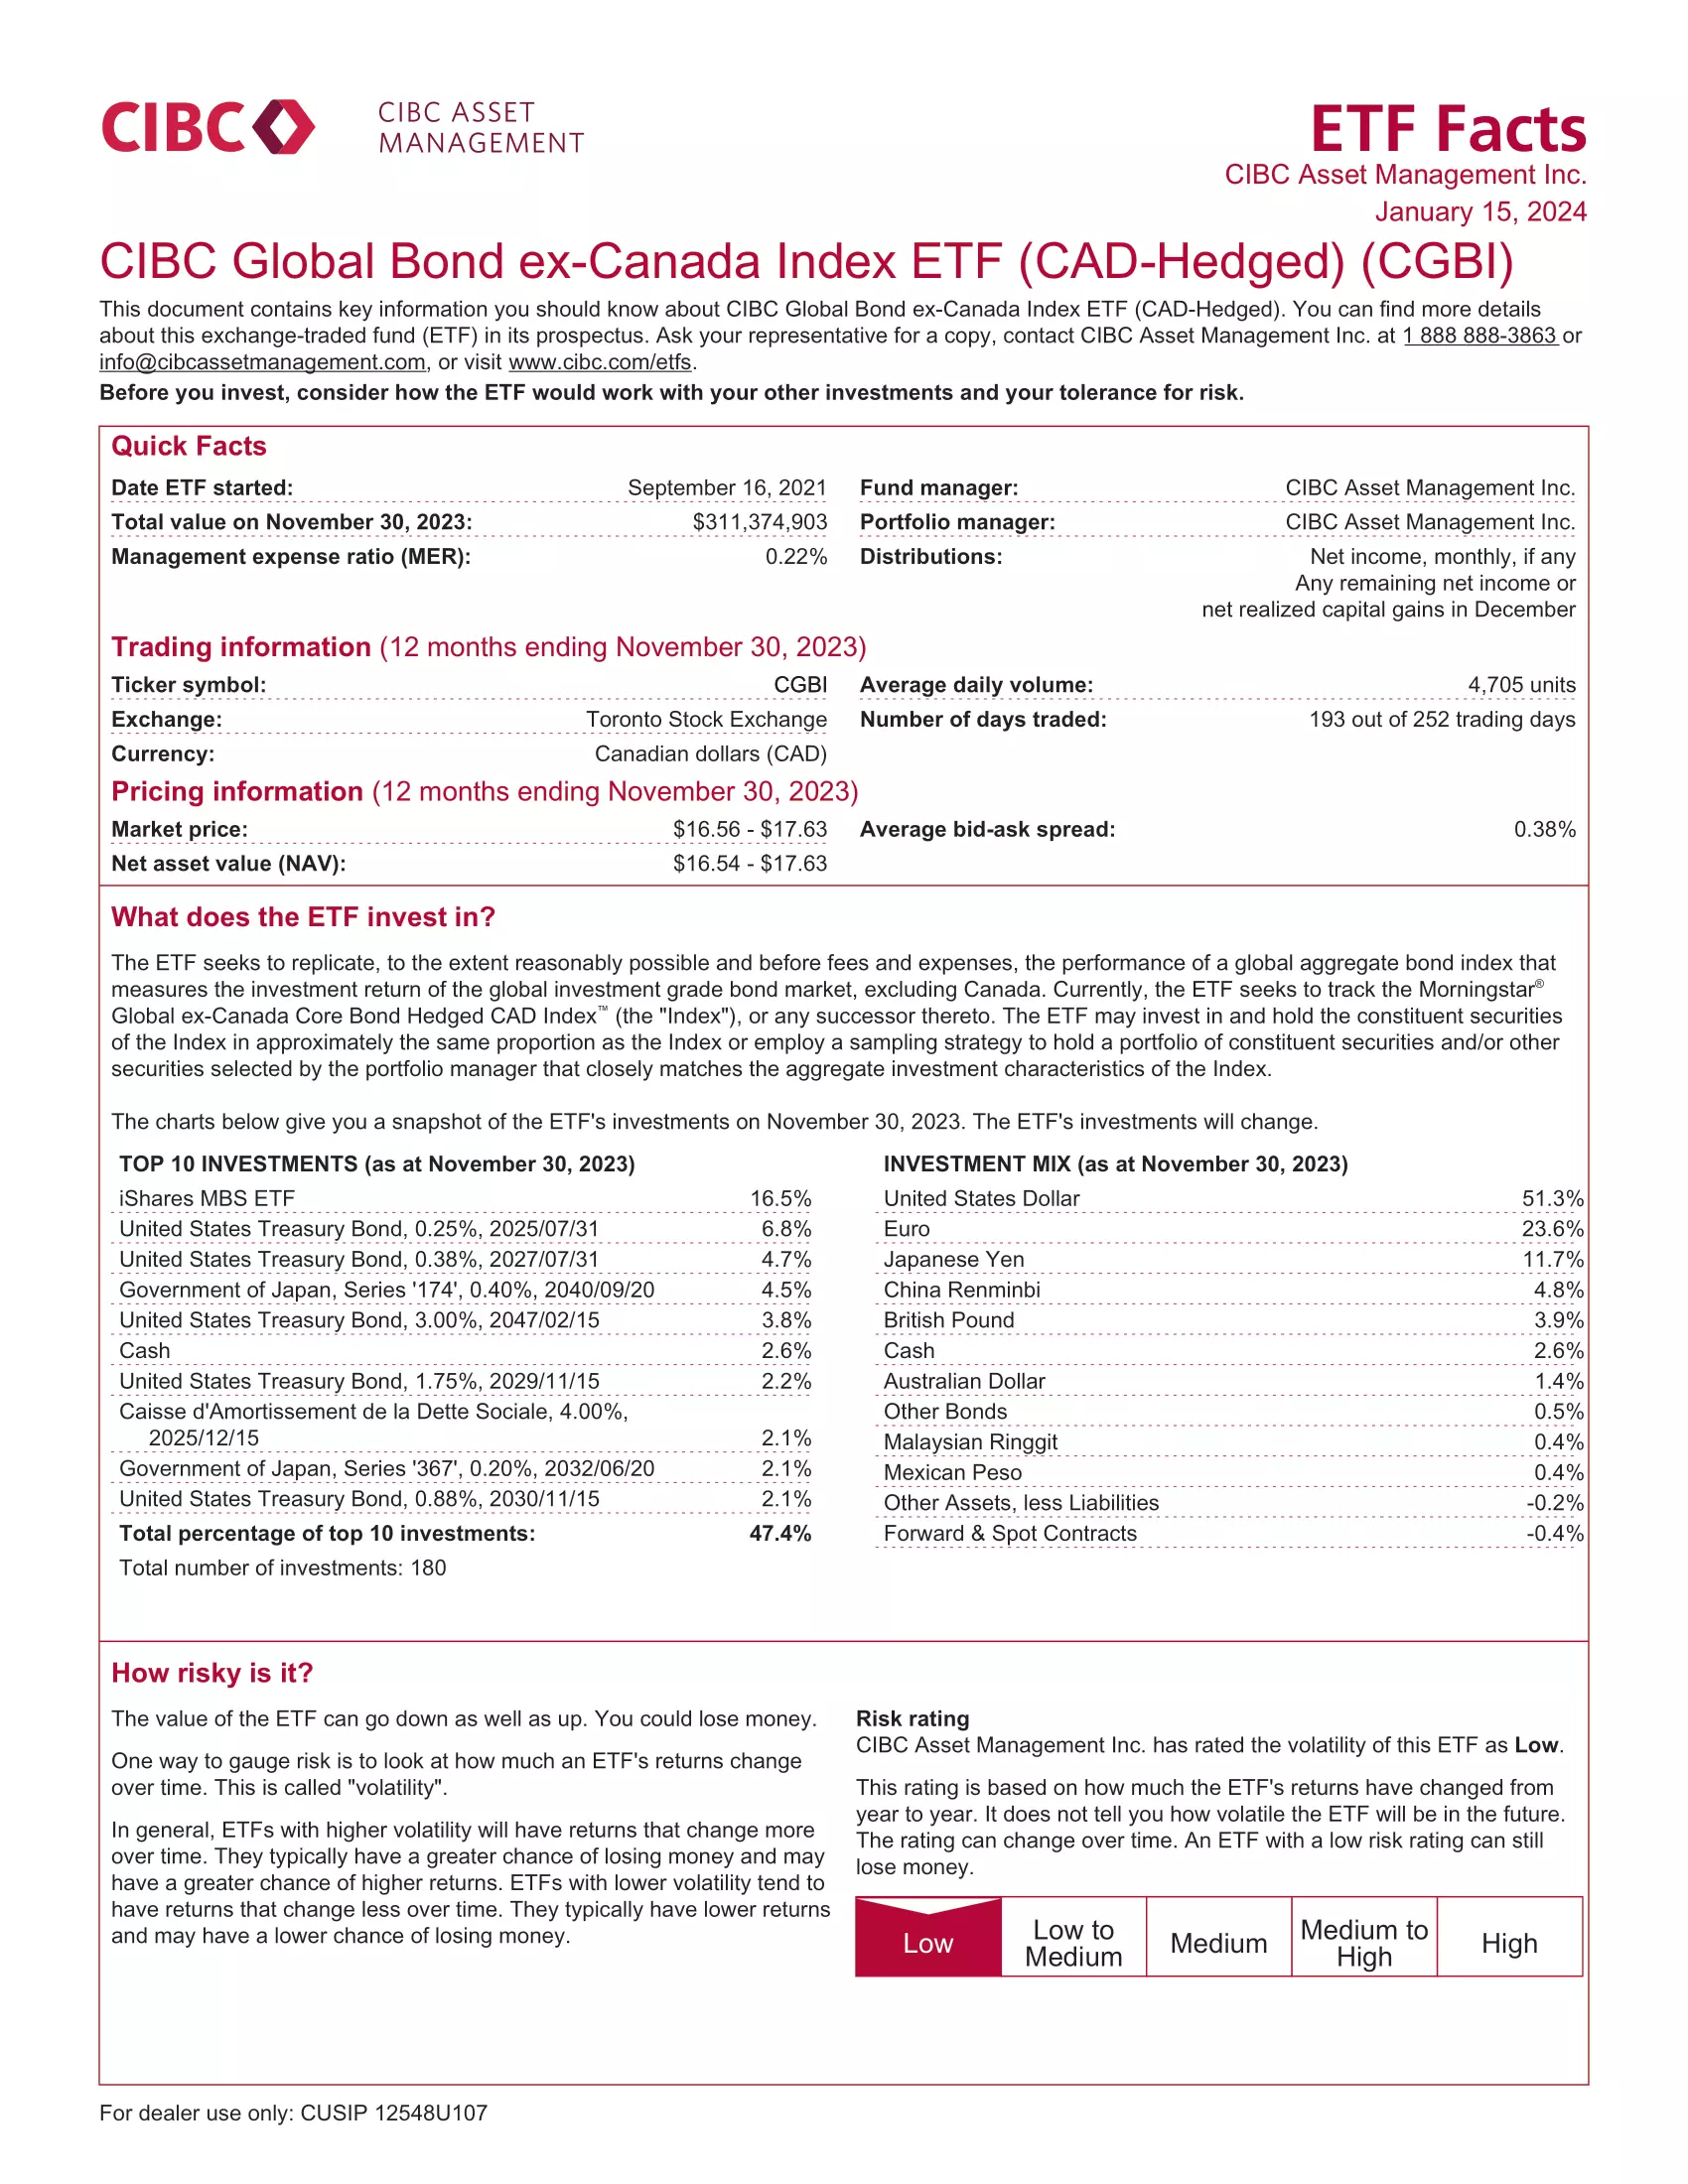 CGBI: CIBC Global Bond ex-Canada Index ETF (CAD-Hedged)